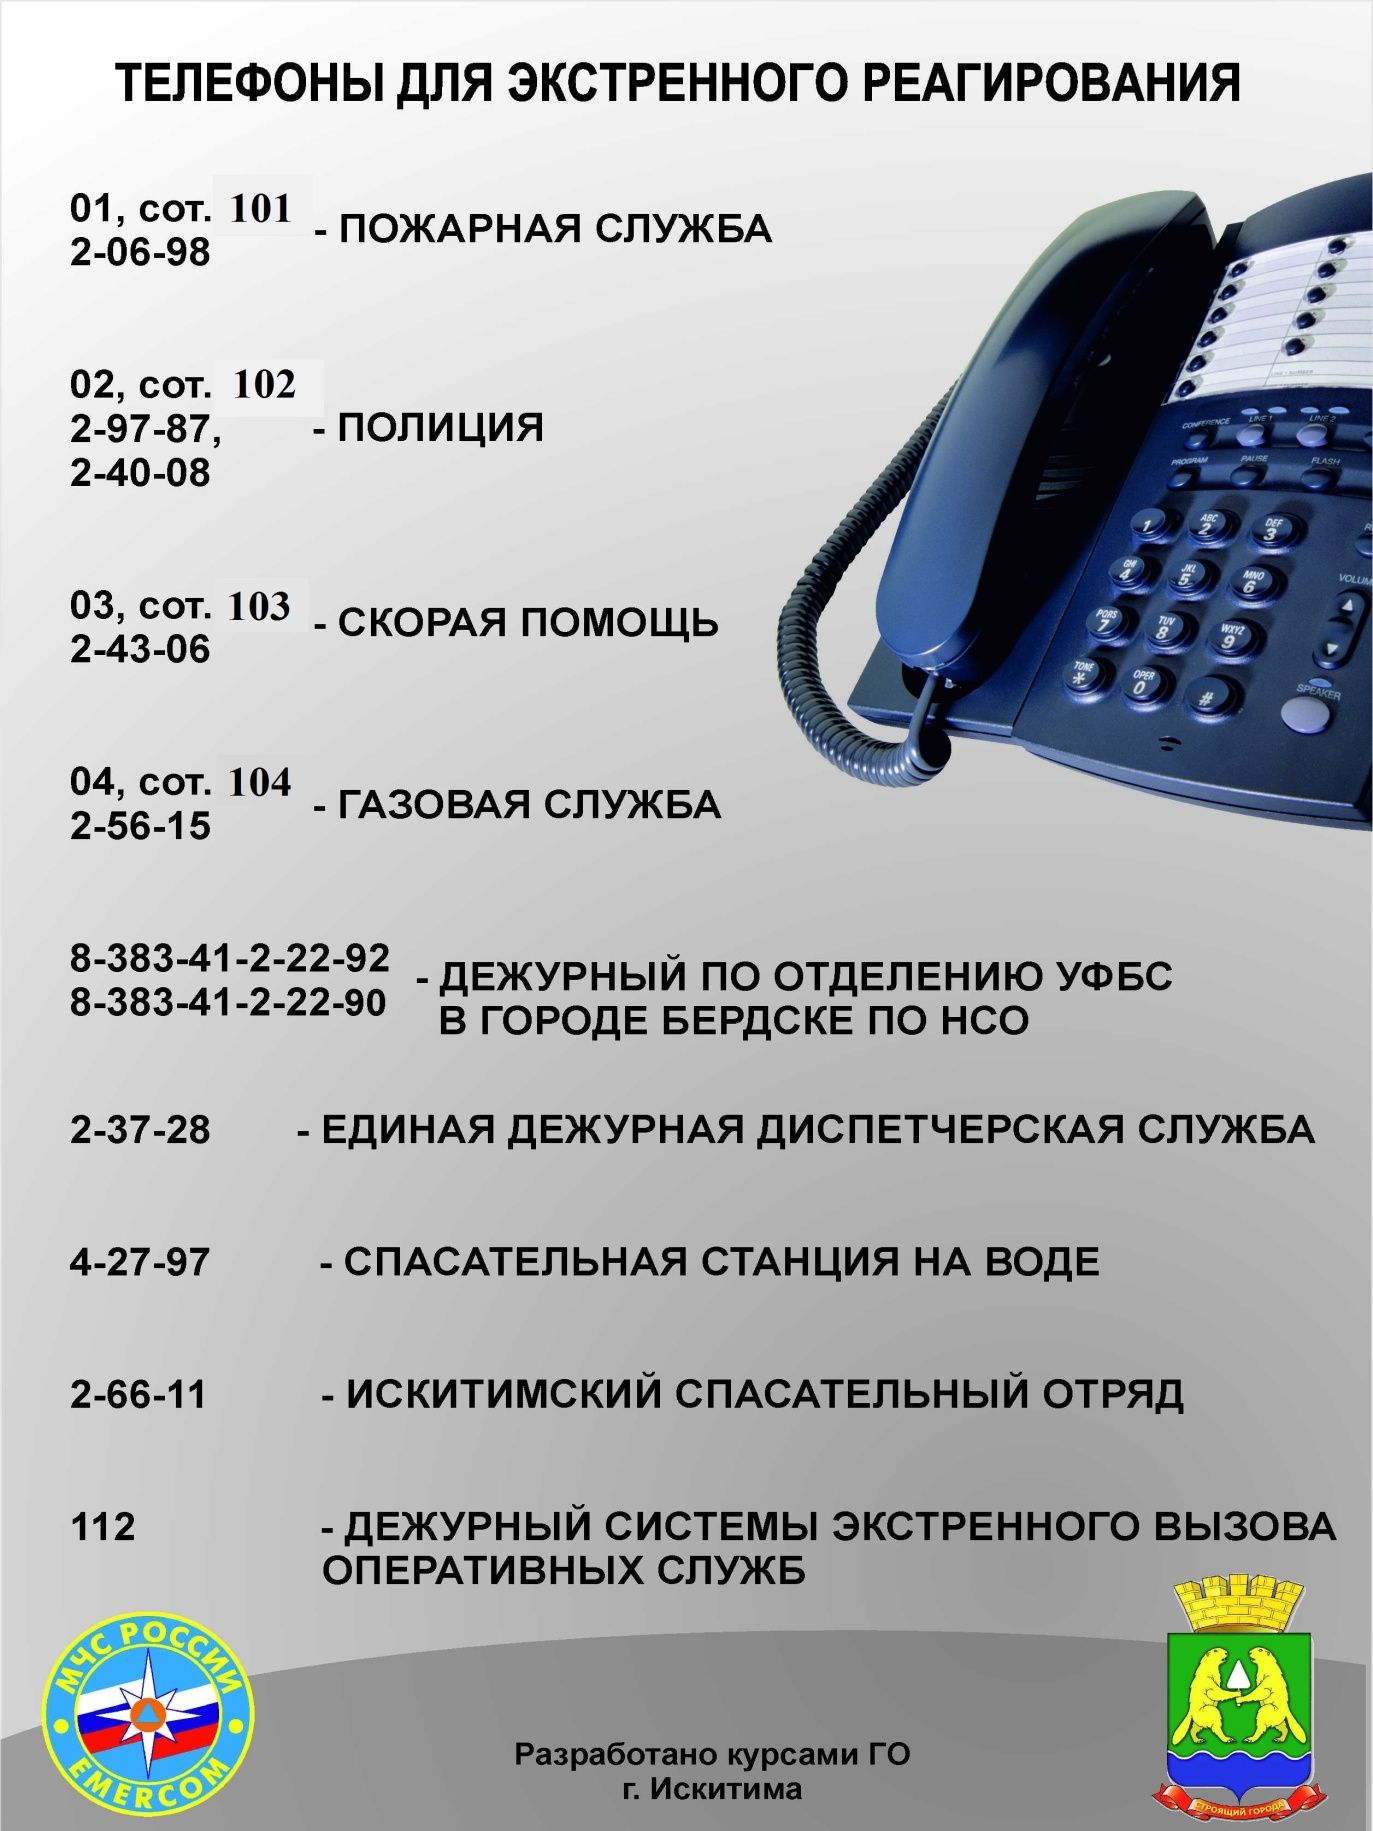 Код телефонов санкт петербурга стационарных телефонов. Телефоны для экстренного реагирования. Номер телефона. Телефоны служб. Полезные номера телефонов.